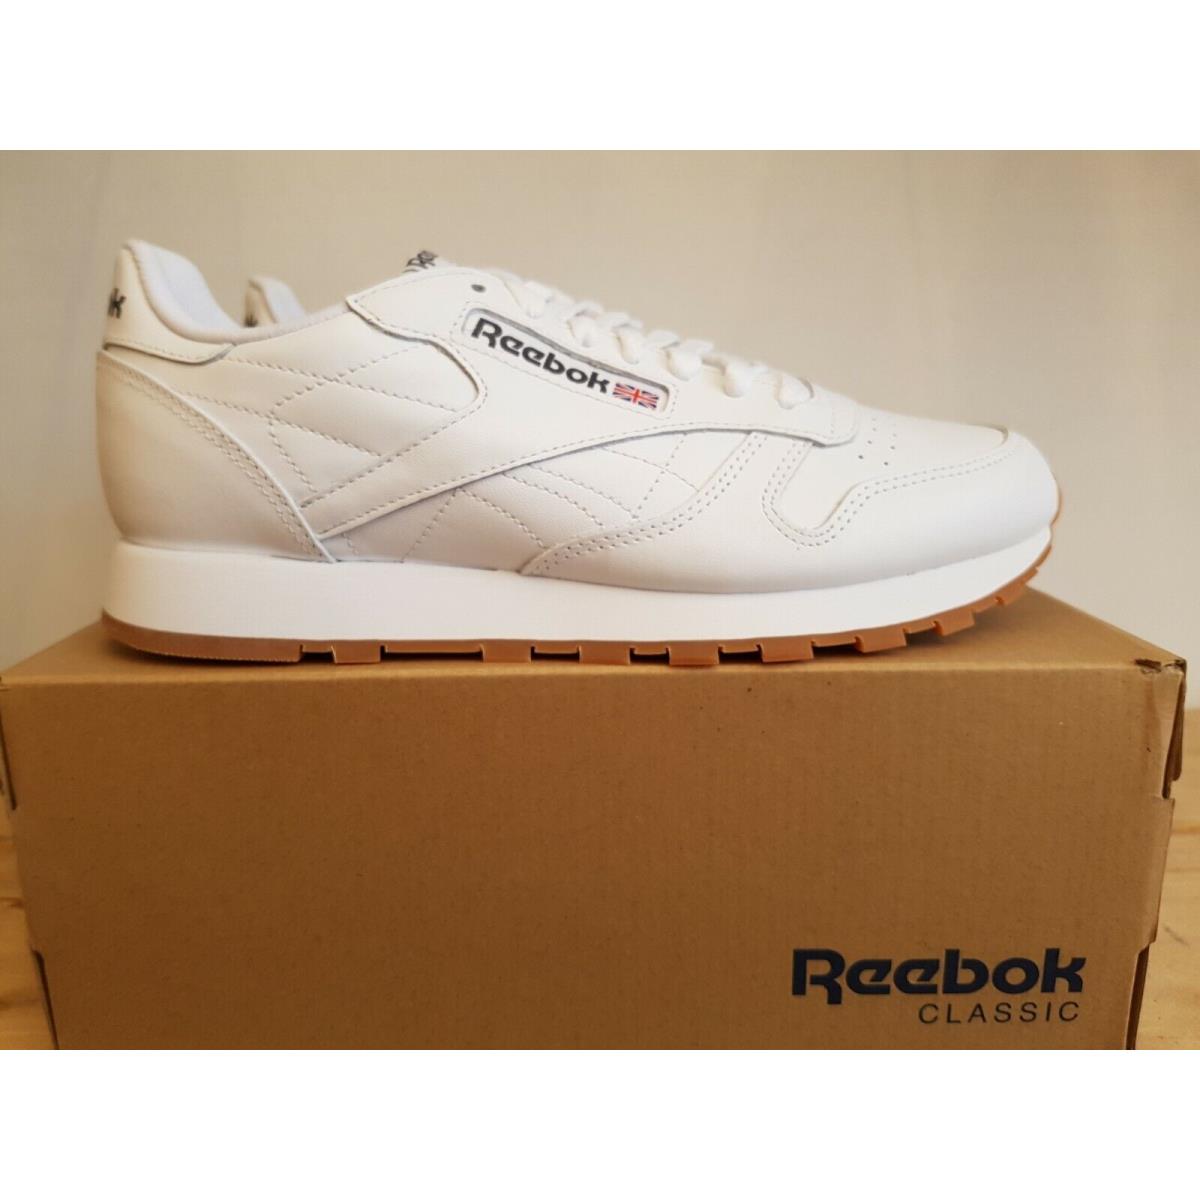 Reebok Classic Cuir Blanc Gum Homme Running Baskets Chaussures de tennis 49797 